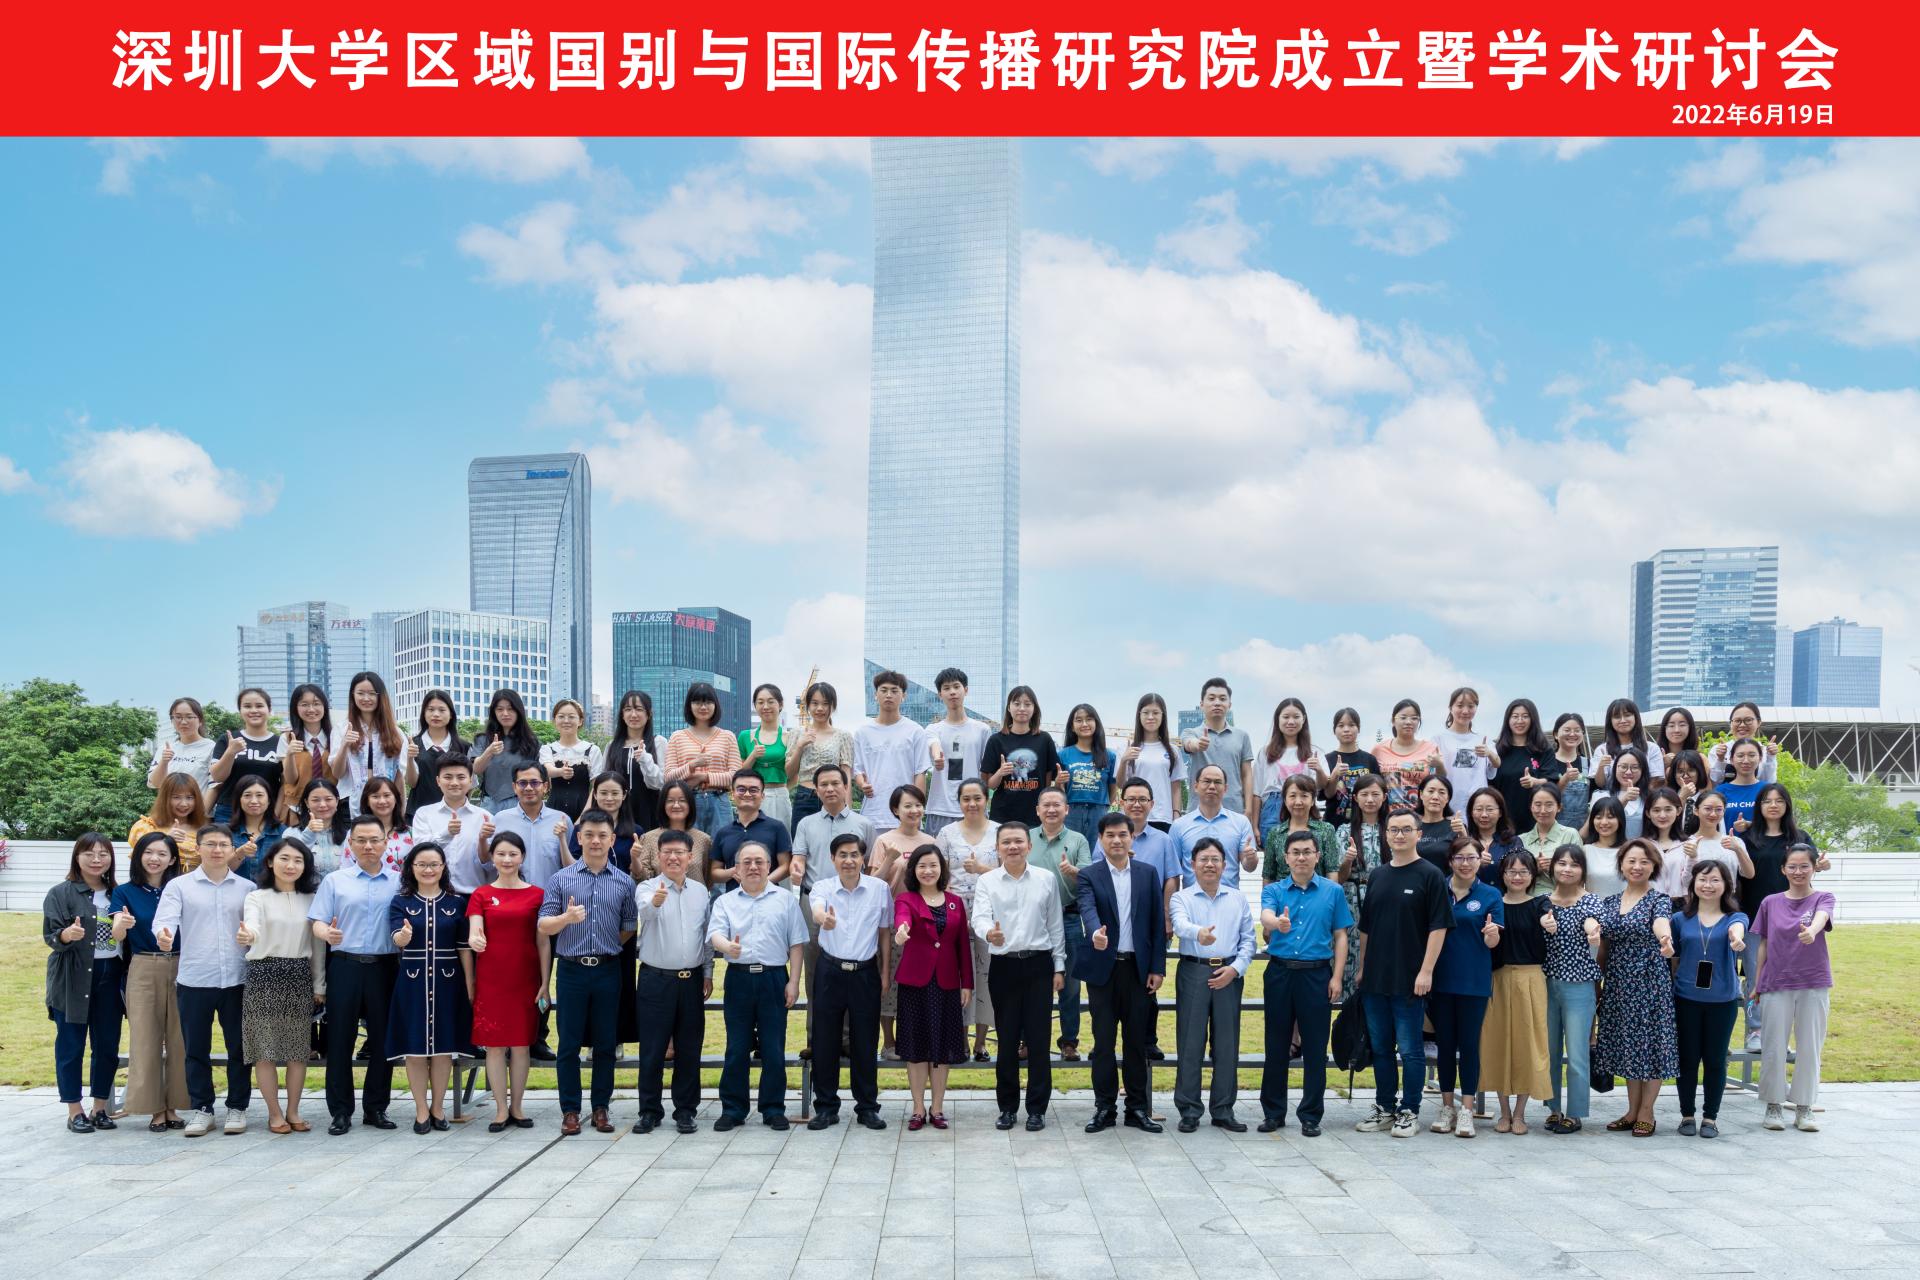 深圳大学区域国别与国际传播研究院成立仪式 暨学术研讨会在校友广场举行